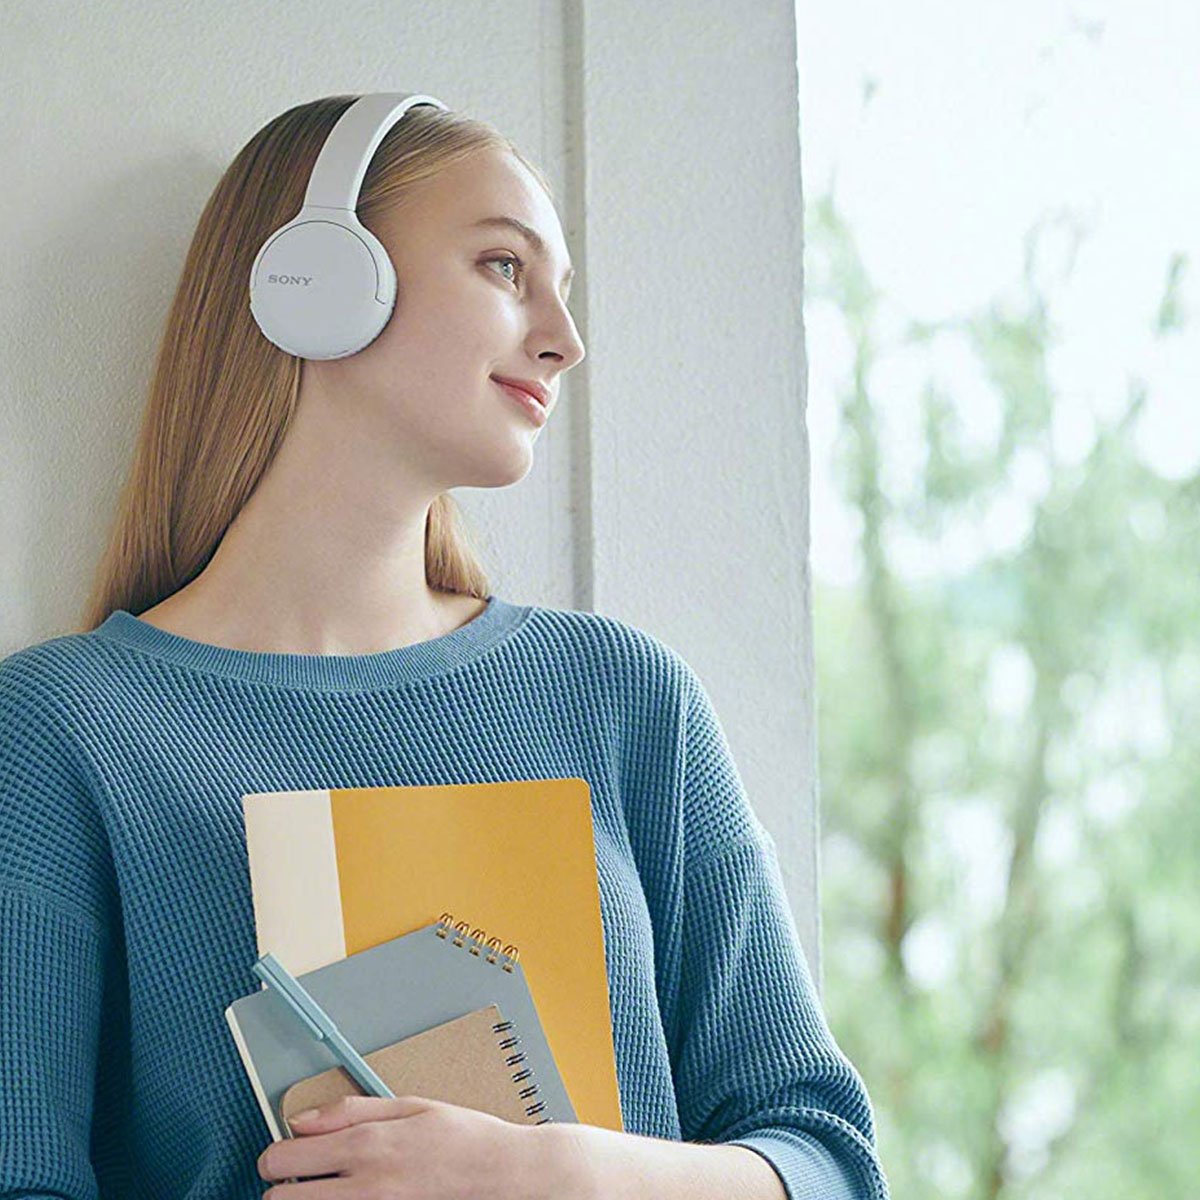 Audífonos On Ear Inalámbricos Whch510 Blanco Sony